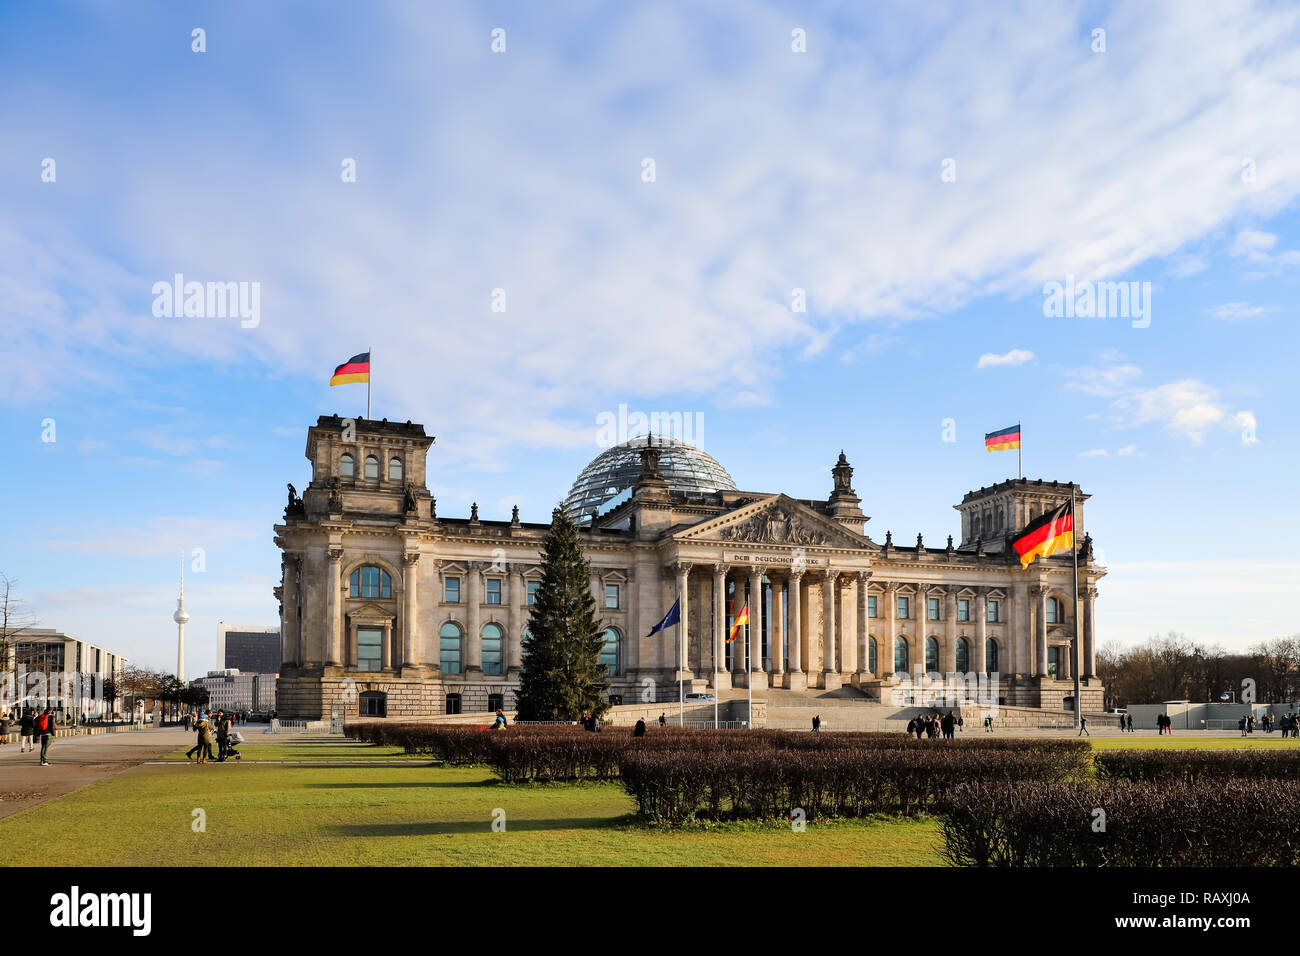 BERLIN, GERMANY - DEC 26, 2017: German Parliament building in Berlin (“Deutscher Bundestag - Plenarbereich Reichstagsgebäude or Reichstagsgebäude”) ph Stock Photo